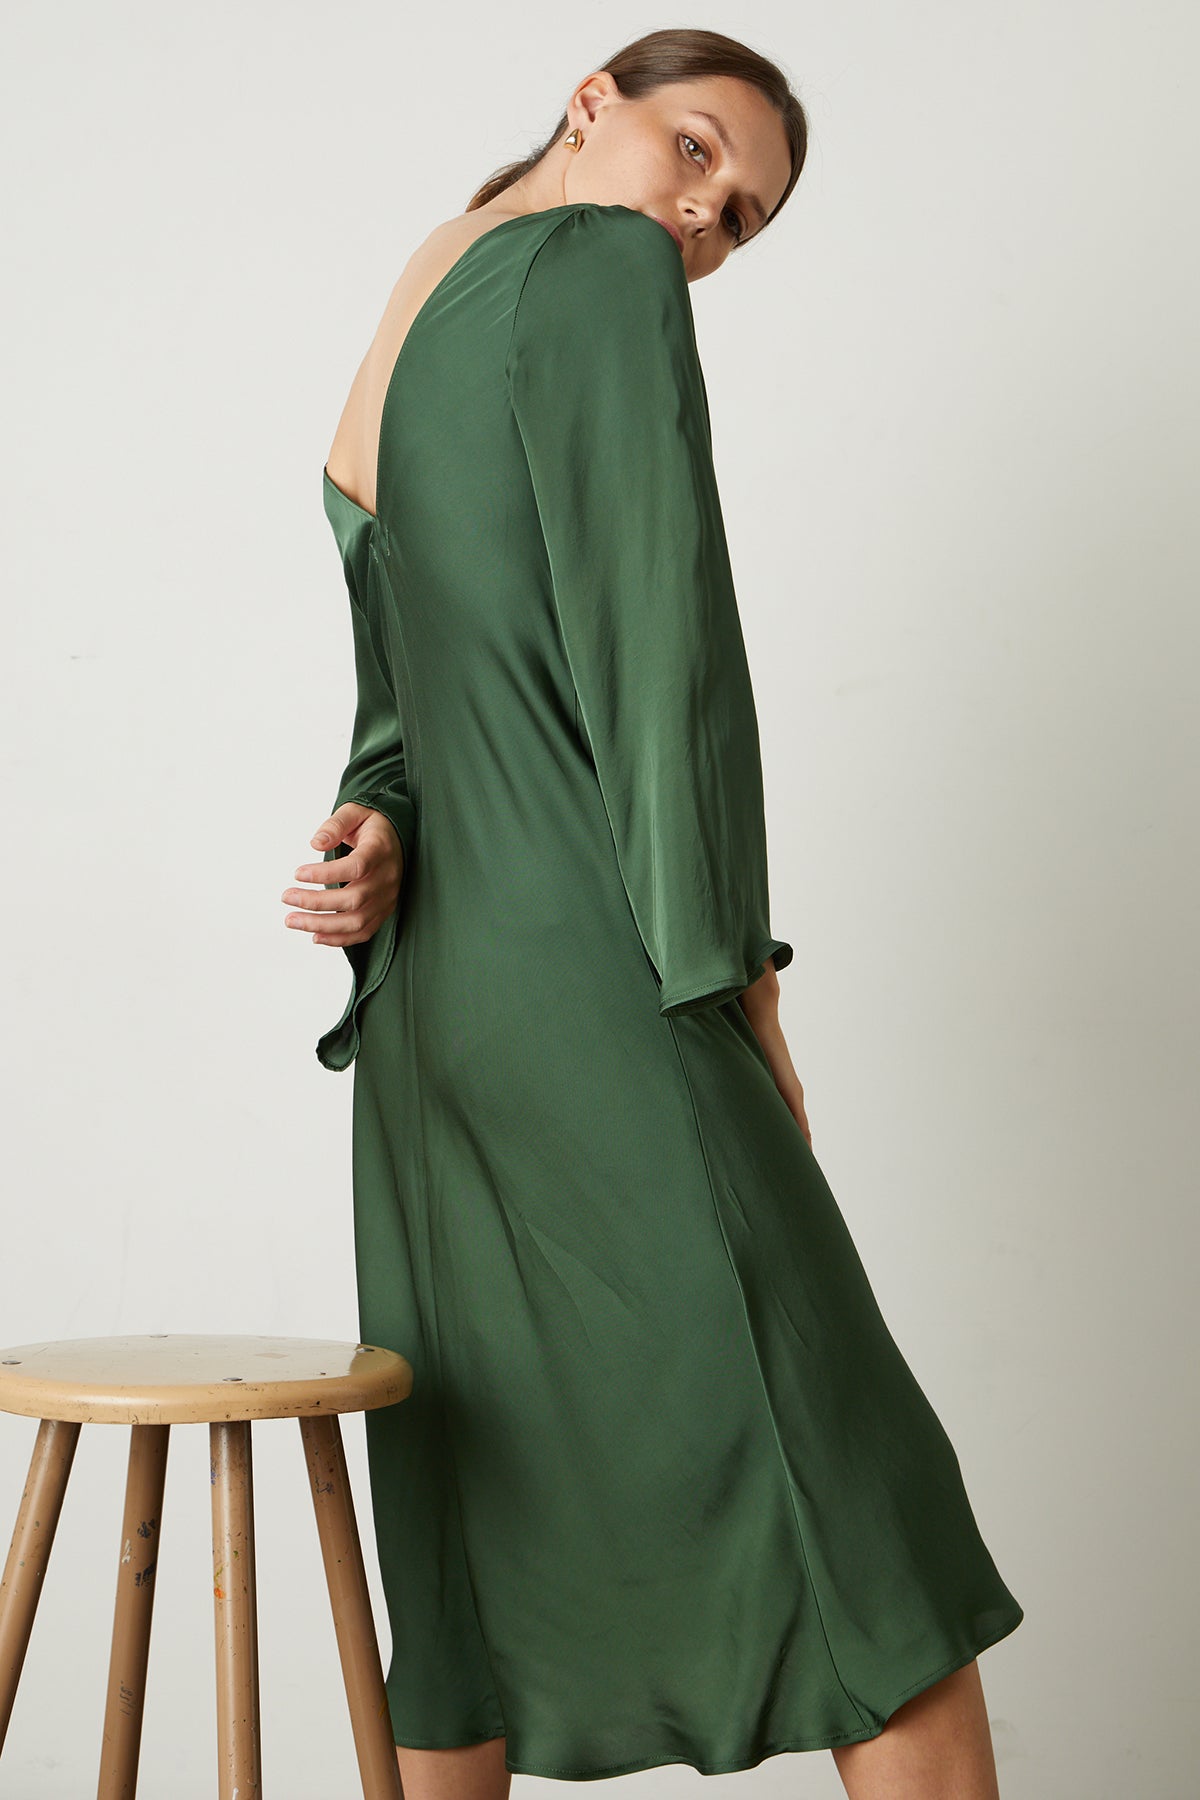 Catherine Satin Midi Dress in fern green full length side & back-25668993908929